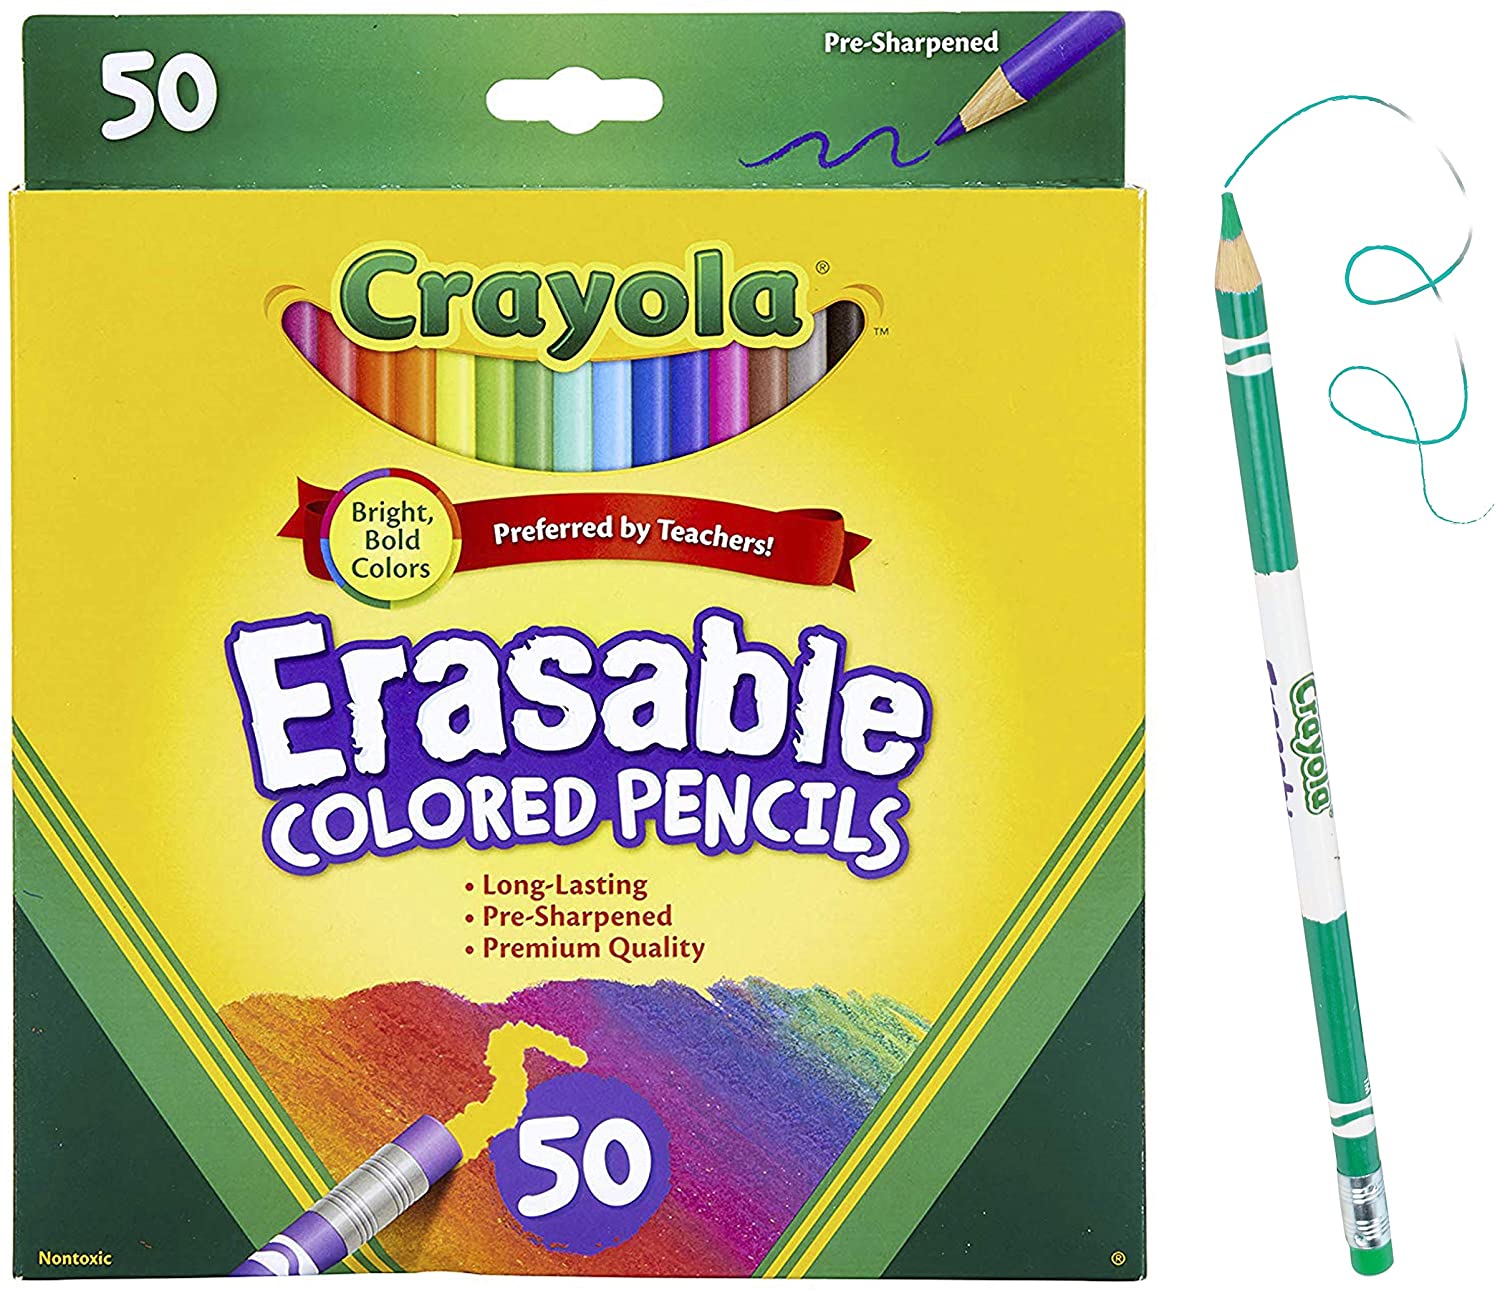 Crayola Long-Lasting Erasable Colored Pencils, 50-Count